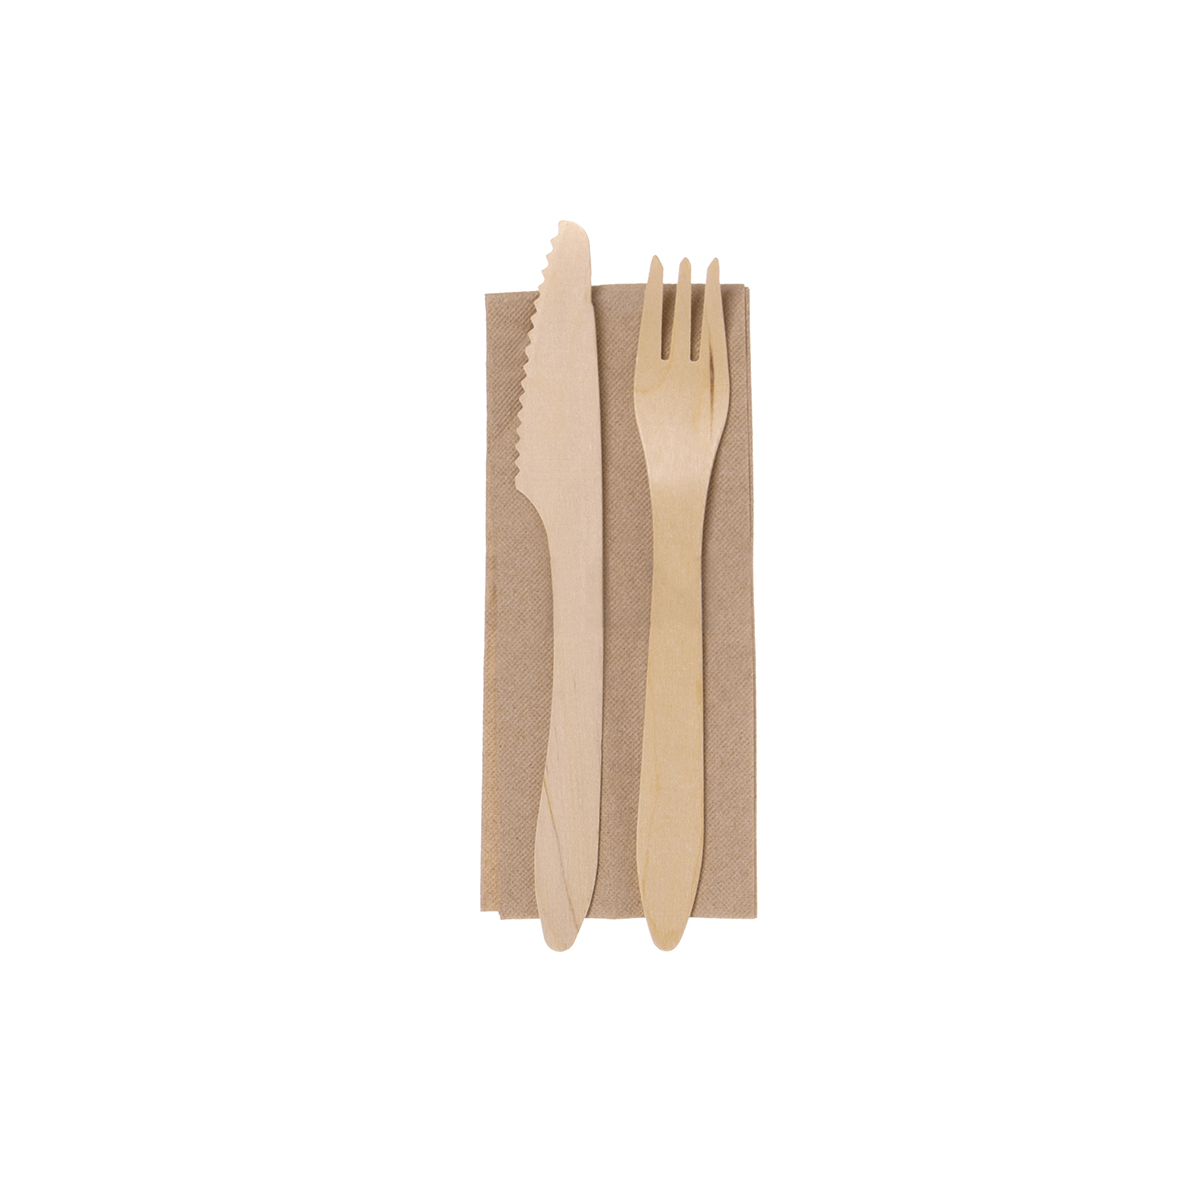 Holz Besteck Set Messer, Gabel und Serviette